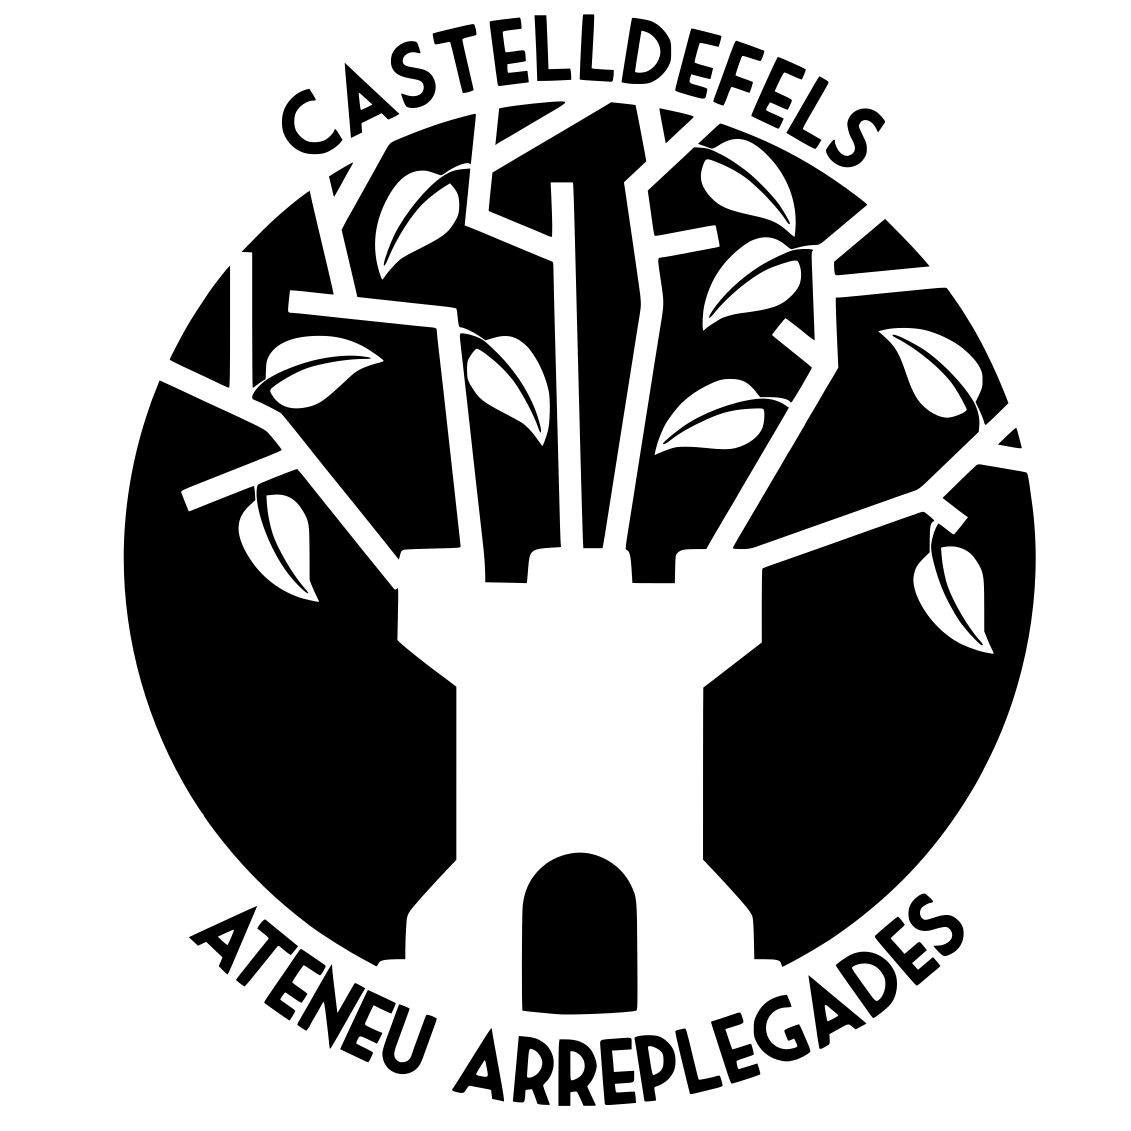 Ateneu Arreplegades Castelldefels